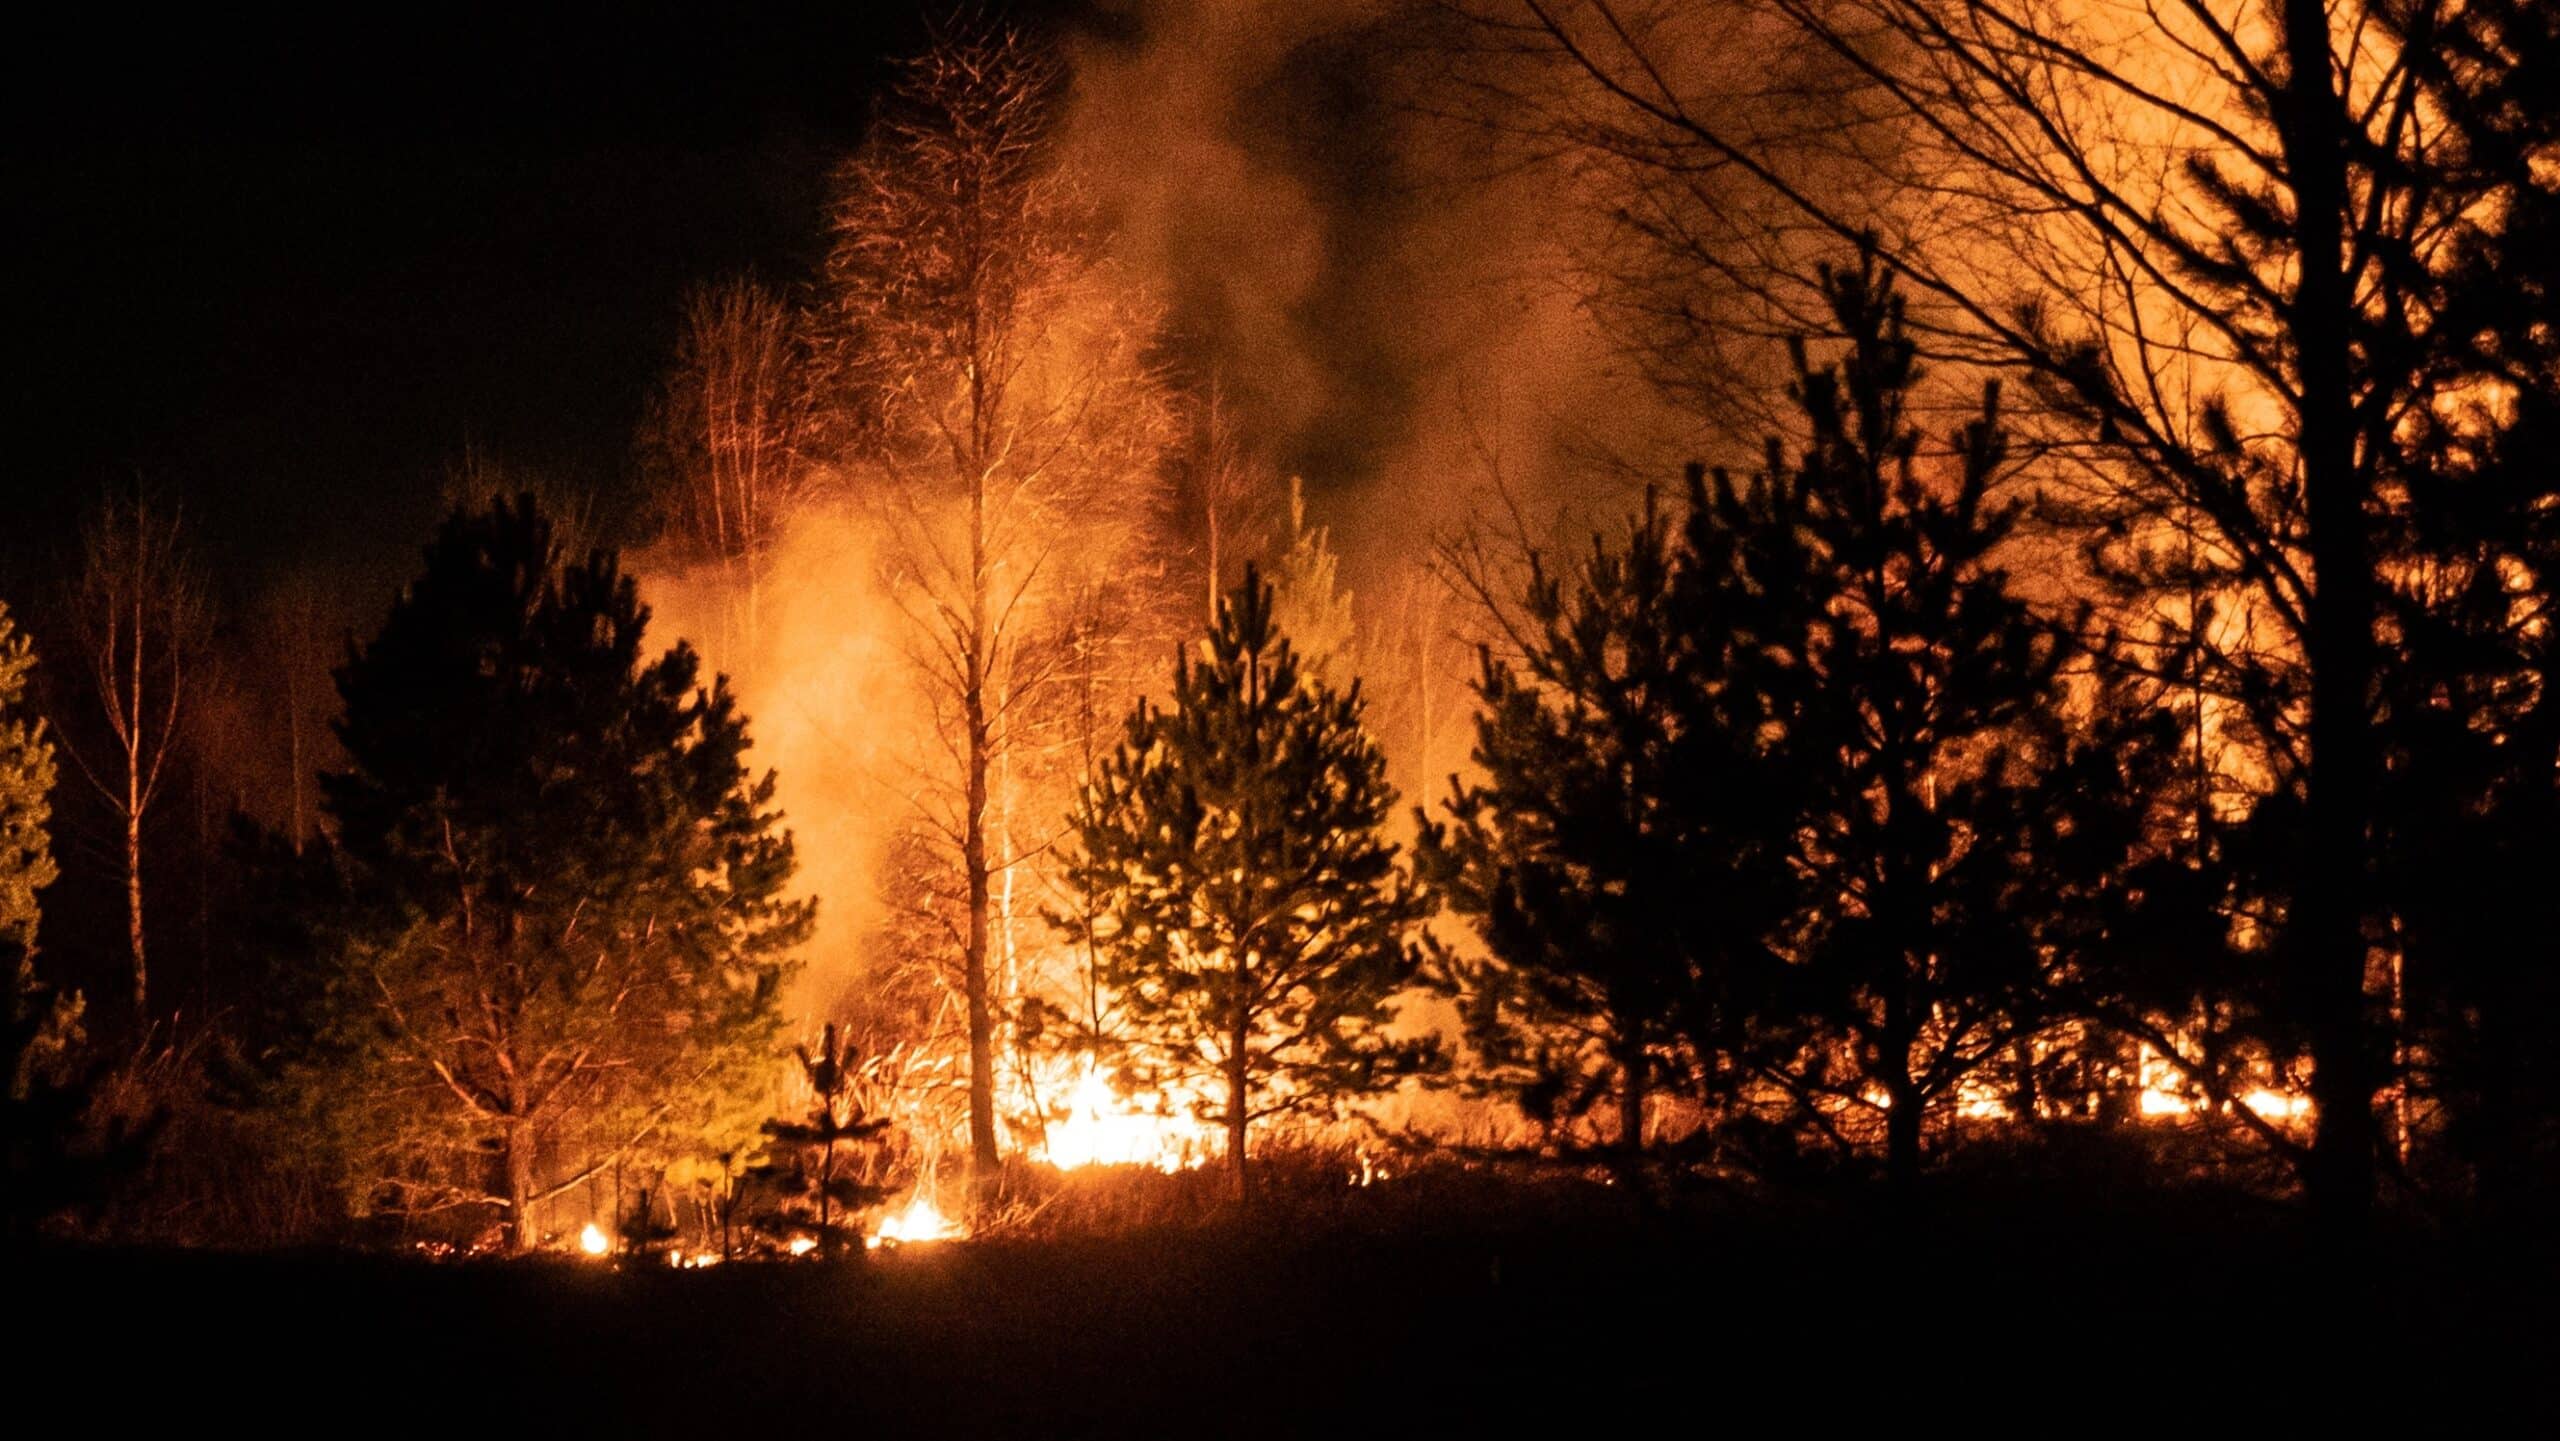 Forest fire. Credit: Egor Vikhrev on Unsplash